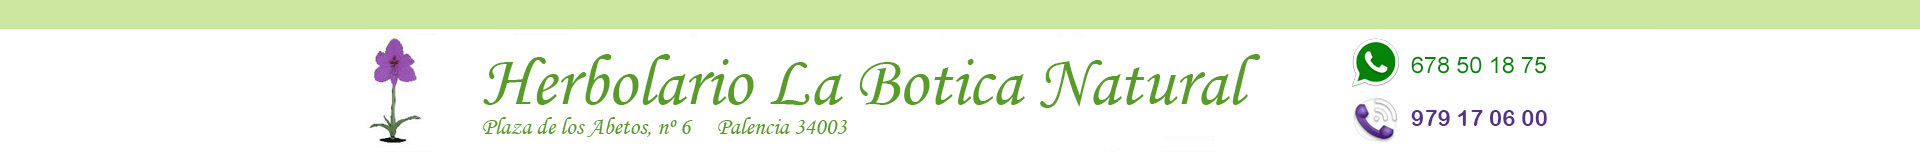 Oulet, Champú loción, Herbolario online, Palencia, La Botica Natural